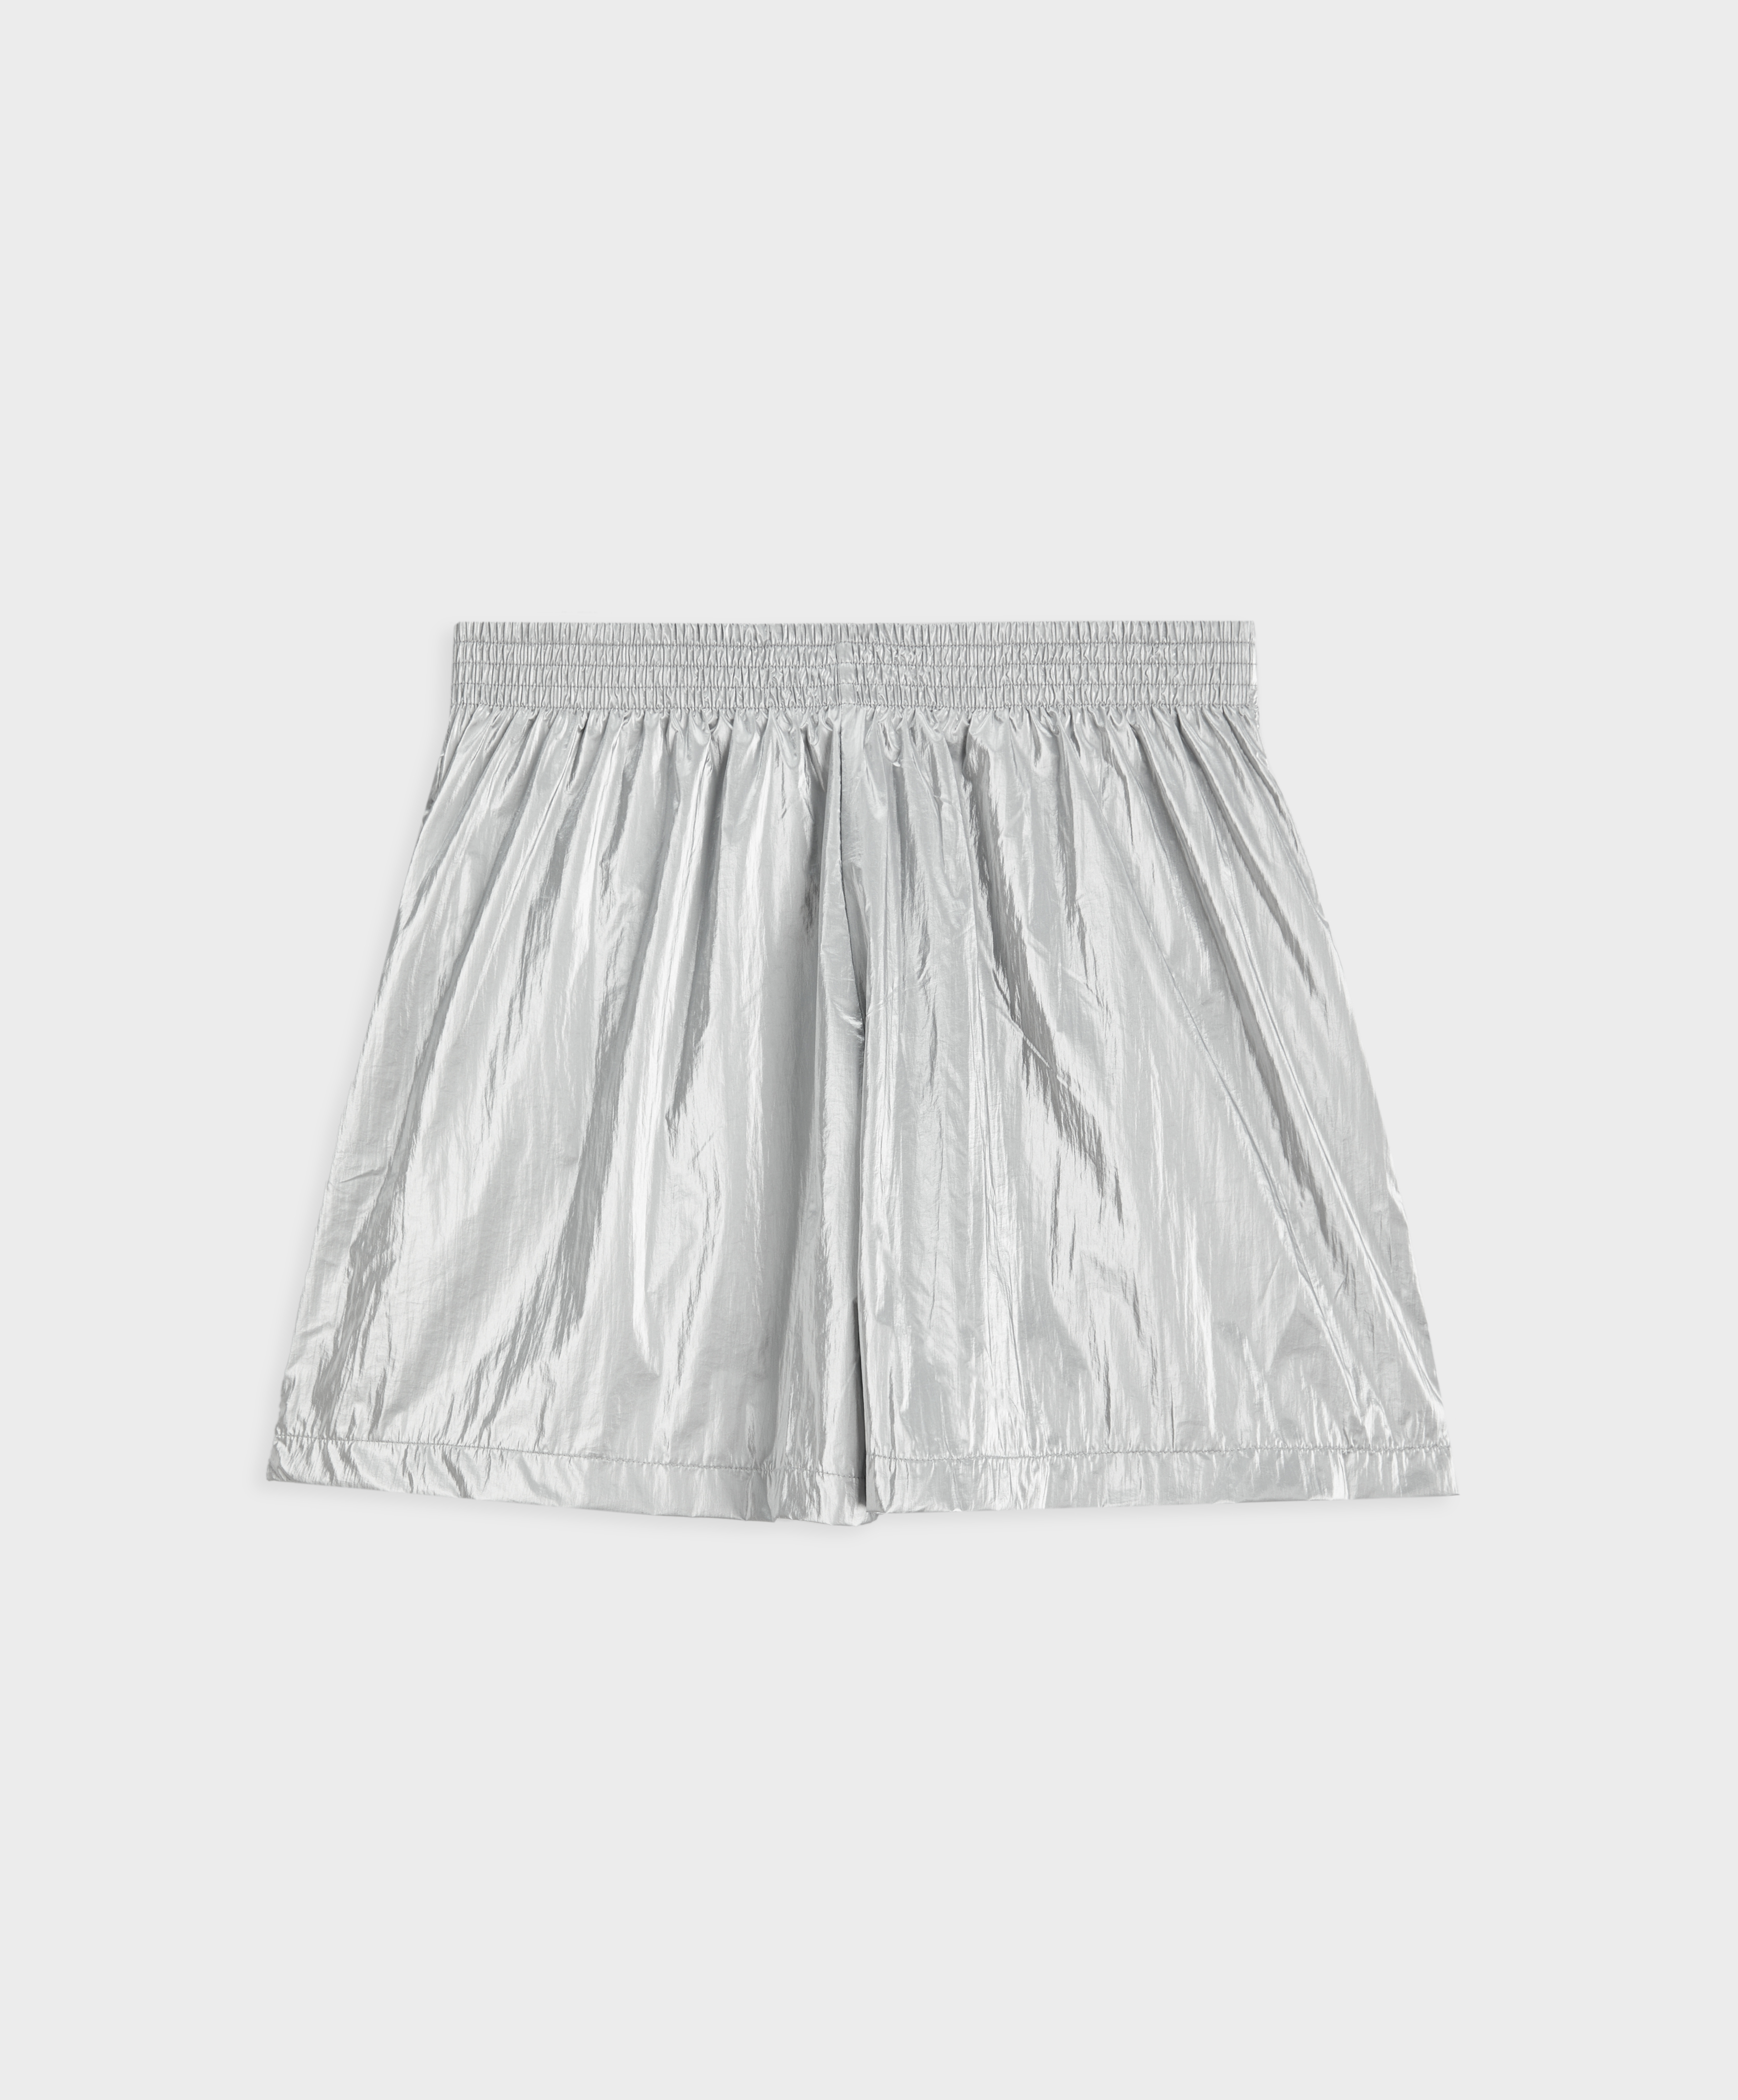 Nylon shorts